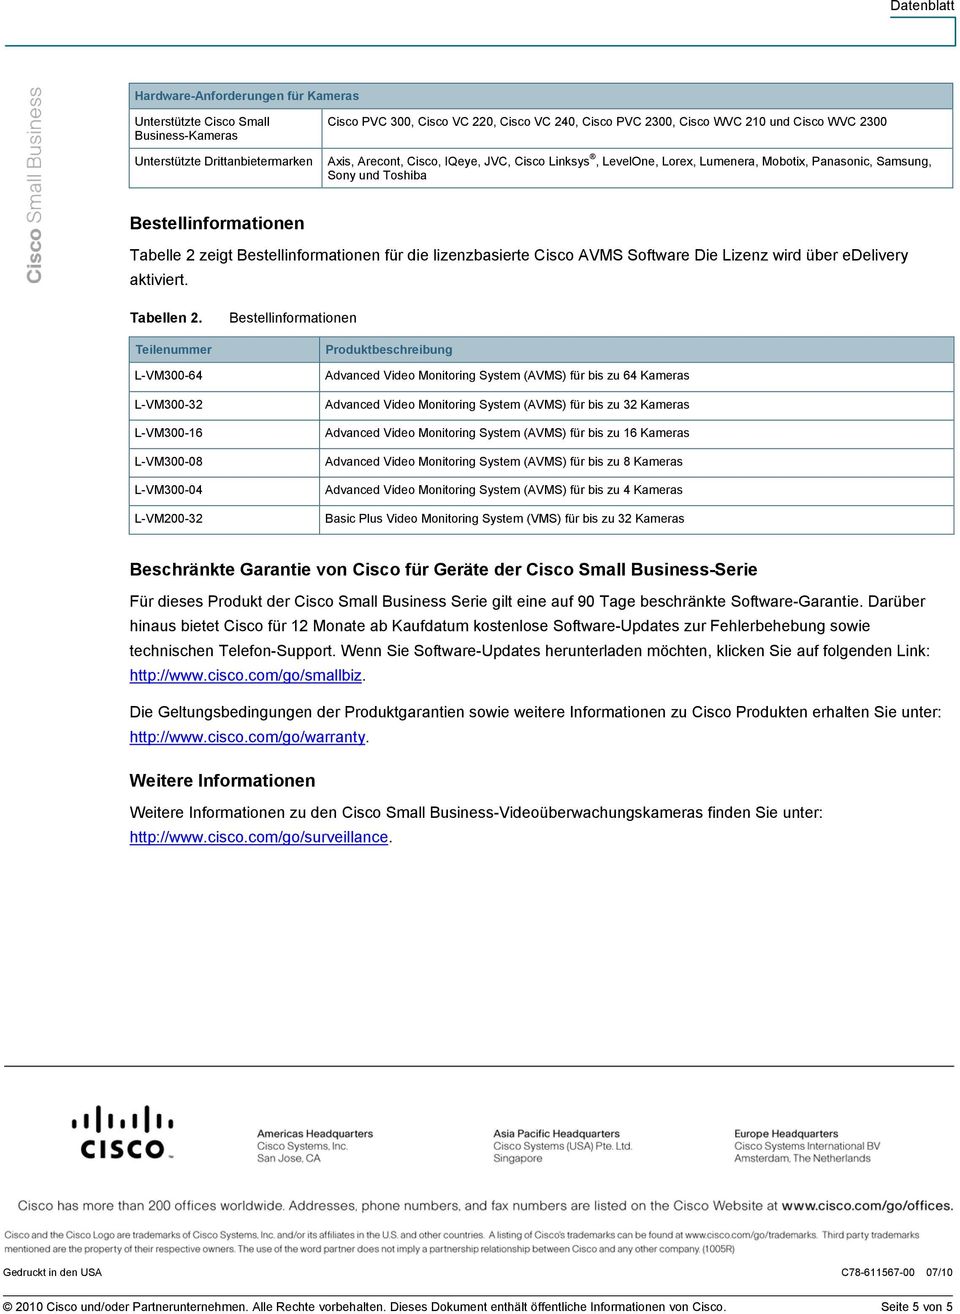 lizenzbasierte Cisco AVMS Software Die Lizenz wird über edelivery aktiviert. Tabellen 2.